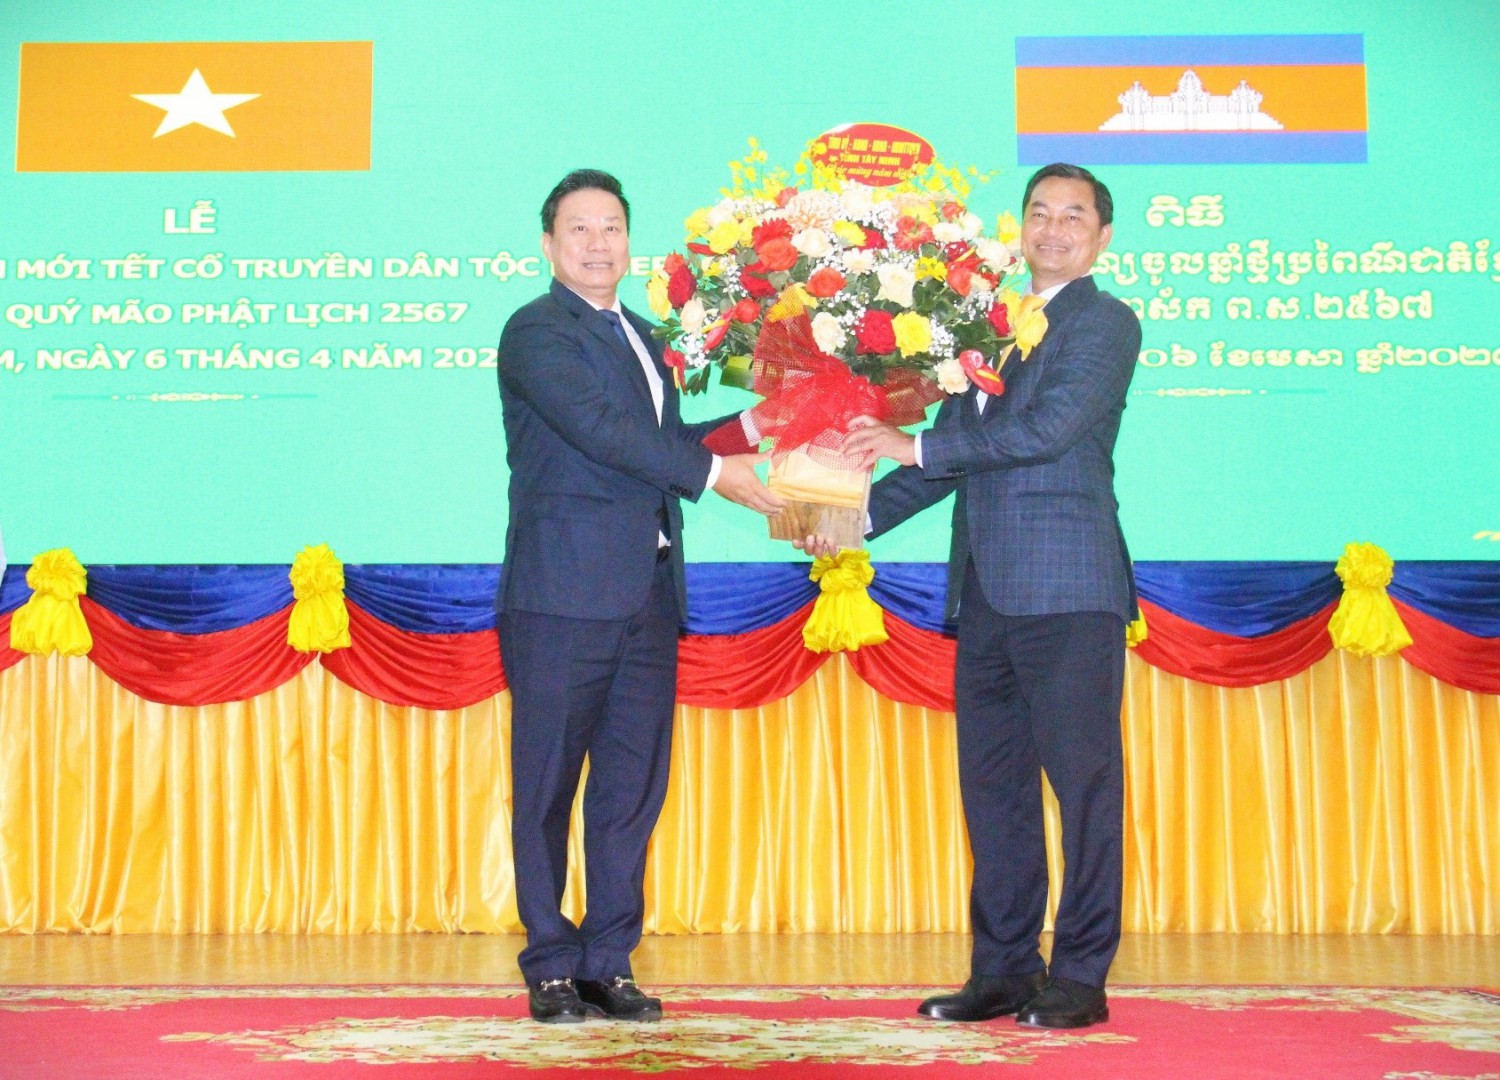 Chủ tịch UBND tỉnh Nguyễn Thanh Ngọc tặng hoa chúc mừng đến Ngài Cheam Chan So Phorn, Tỉnh trưởng tỉnh Tboung Khmum